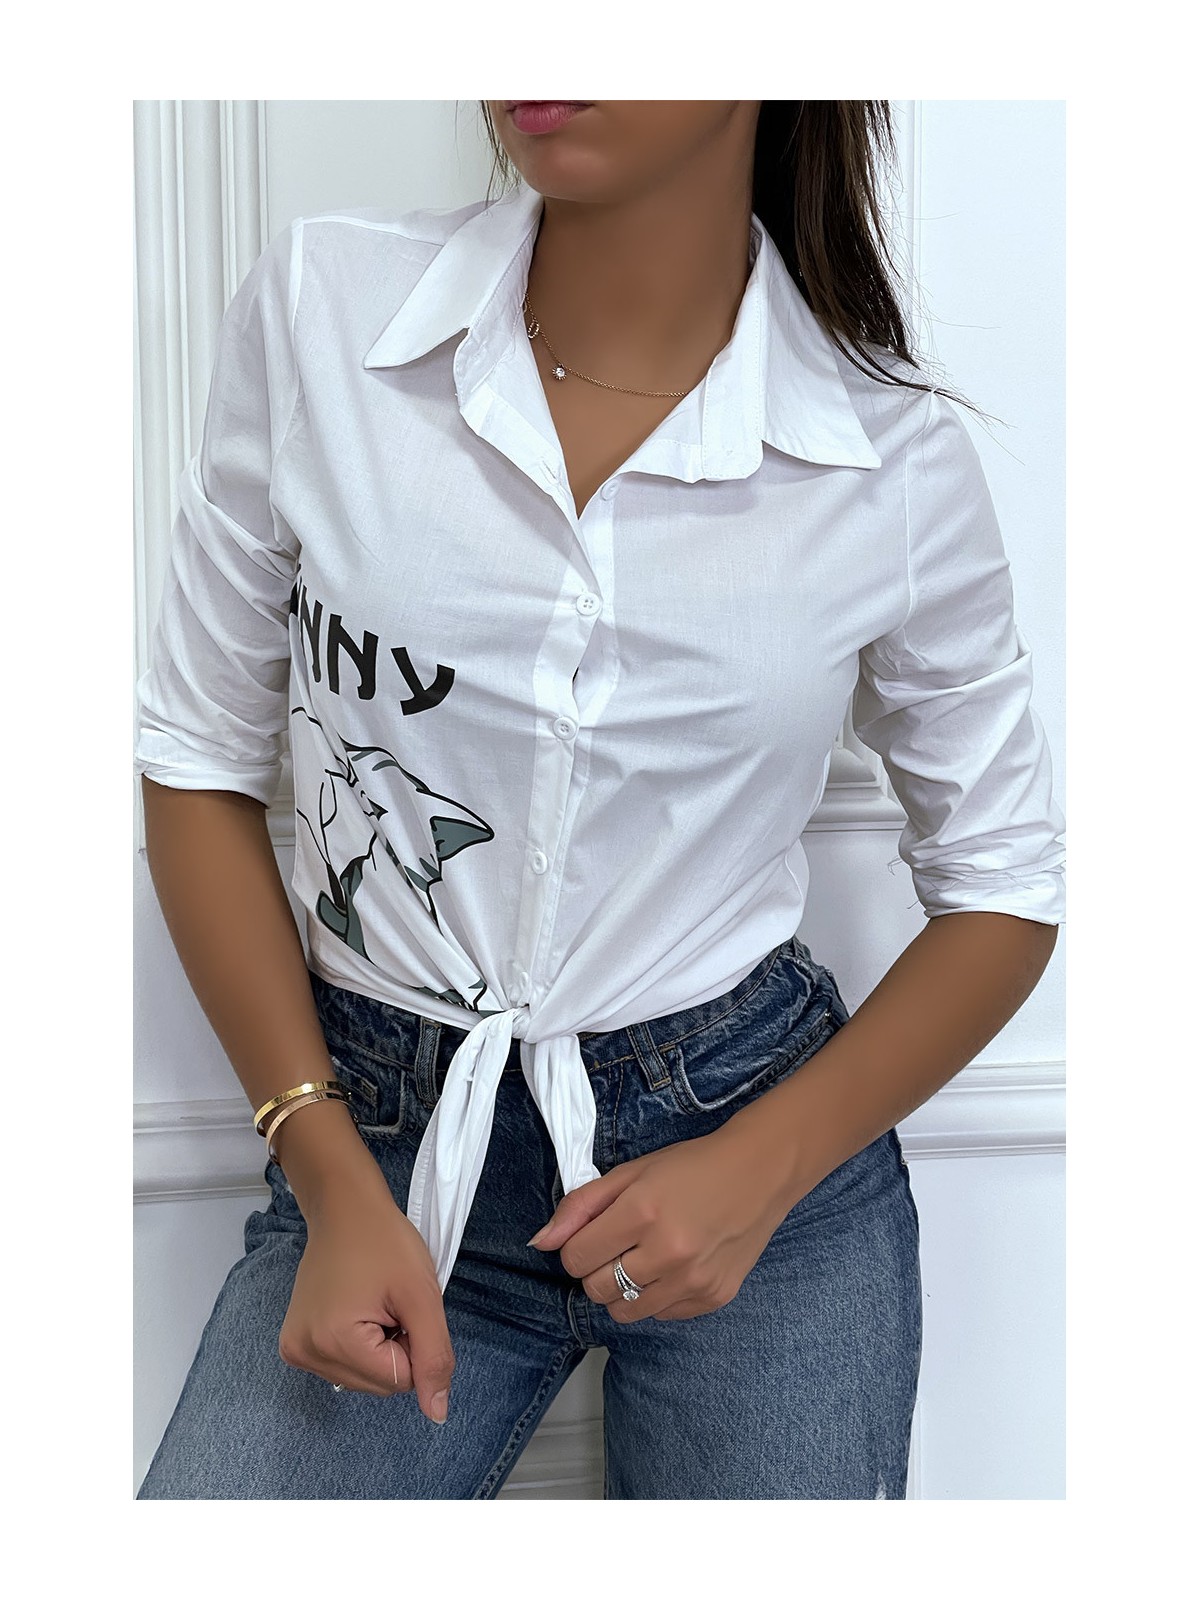 Chemise blanche manches longues avec dessin et inscripstion - 5